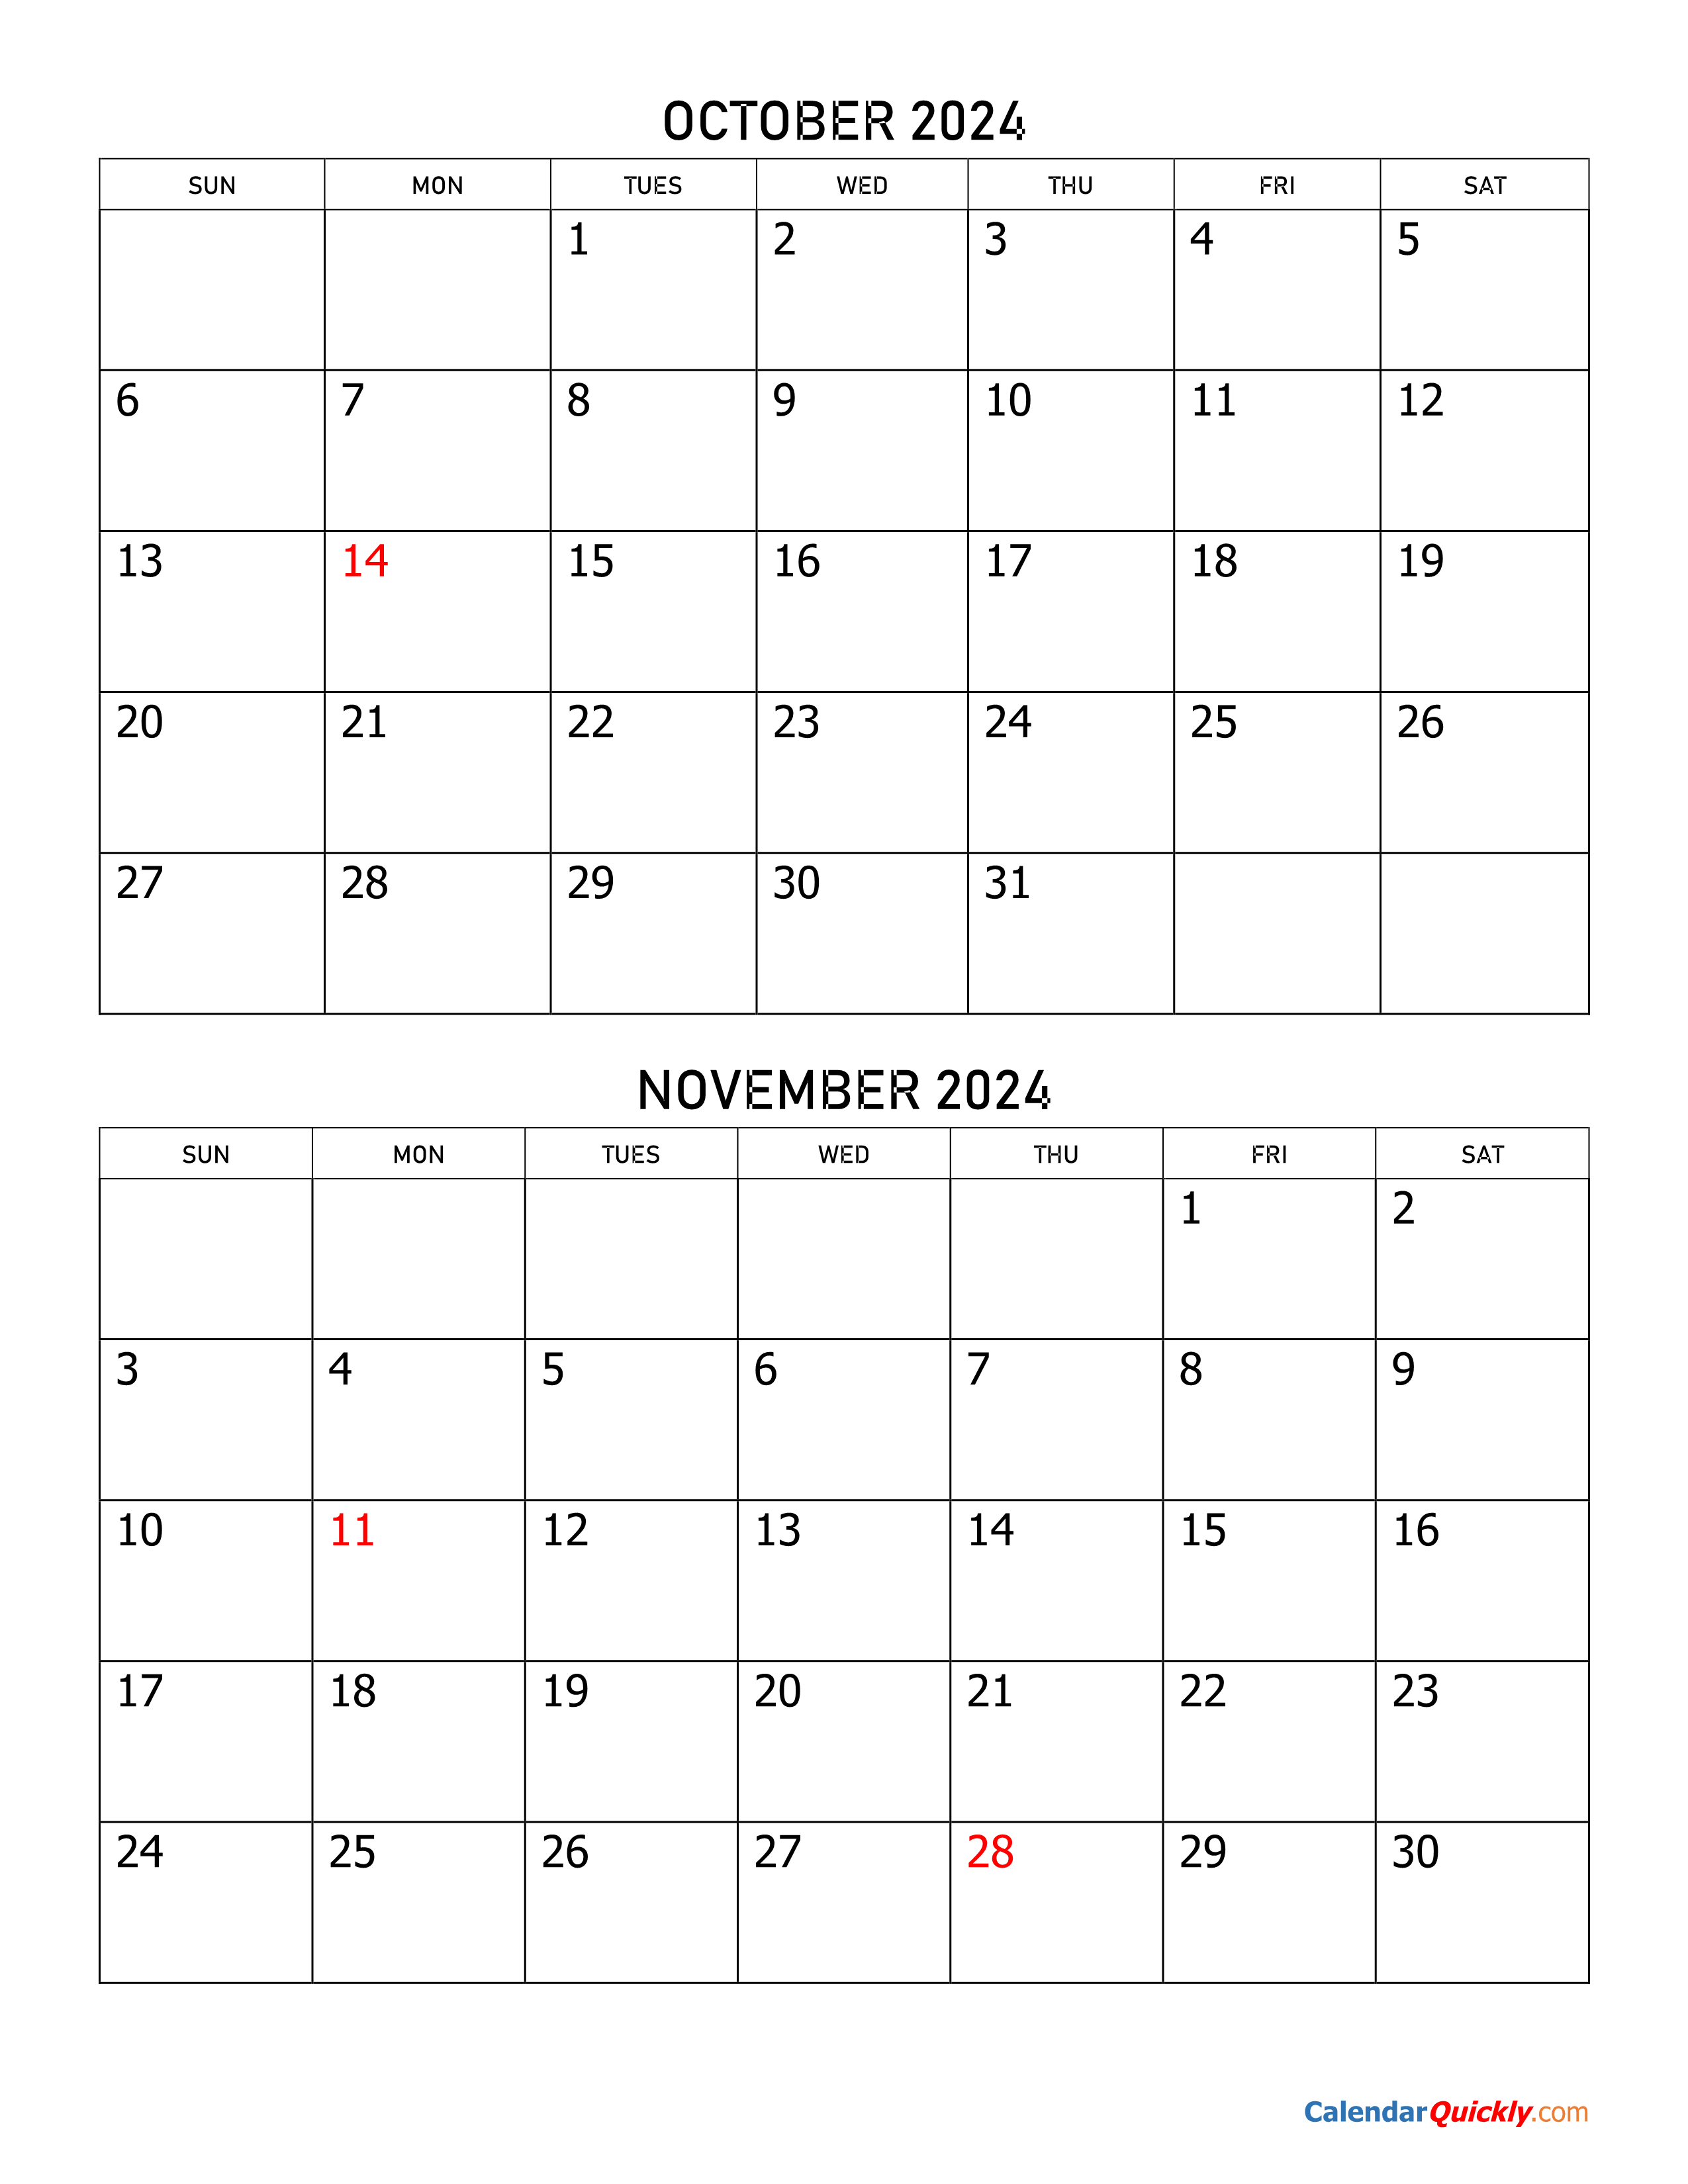 November Calendar 2024 Printable Calendar Quickly Vrogue - Free Printable 2024 October Calender